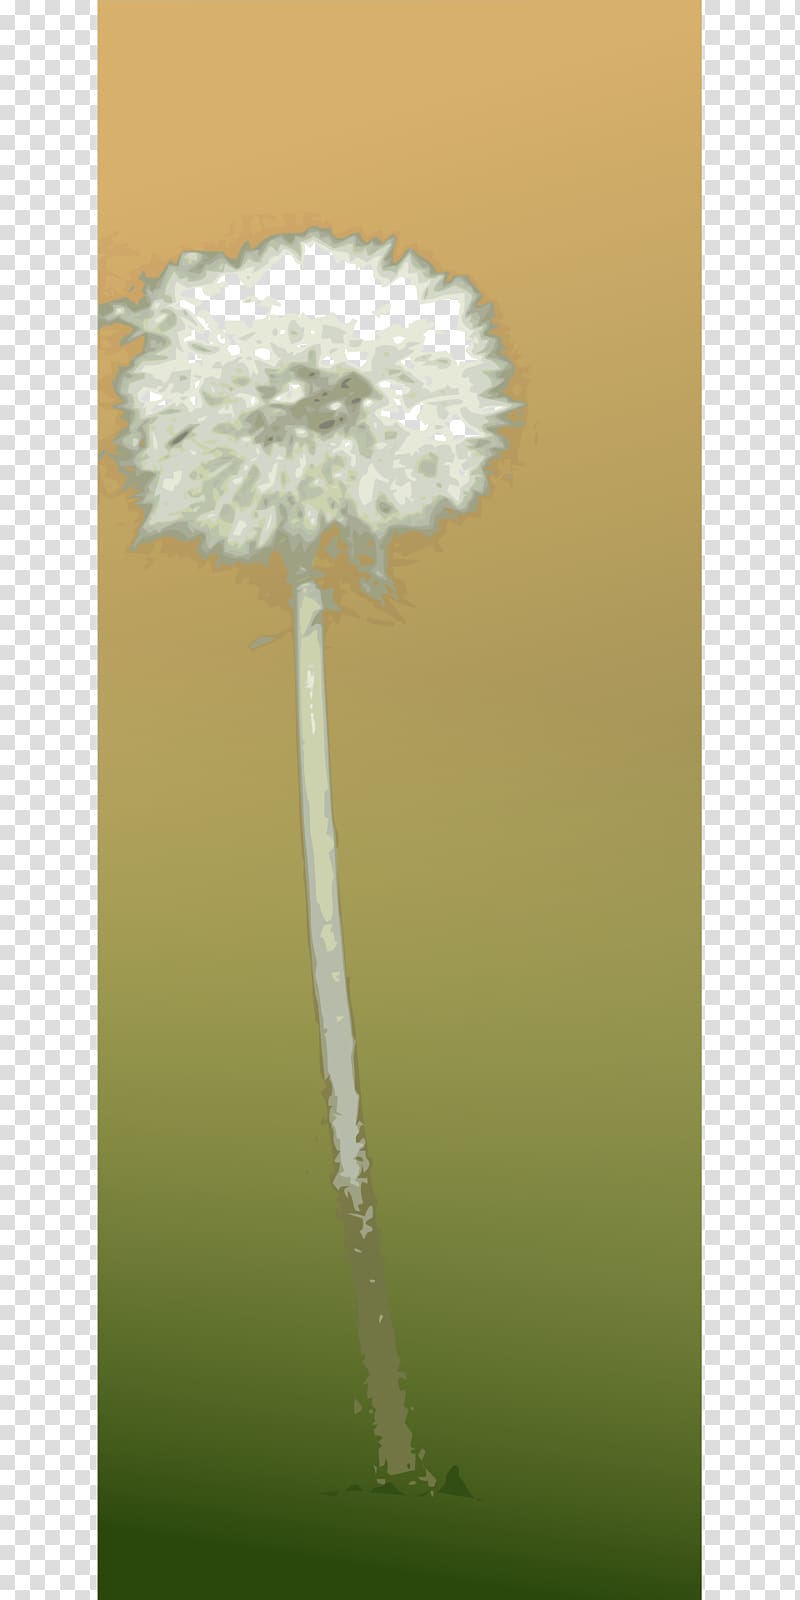 Common Dandelion , dandelion transparent background PNG clipart